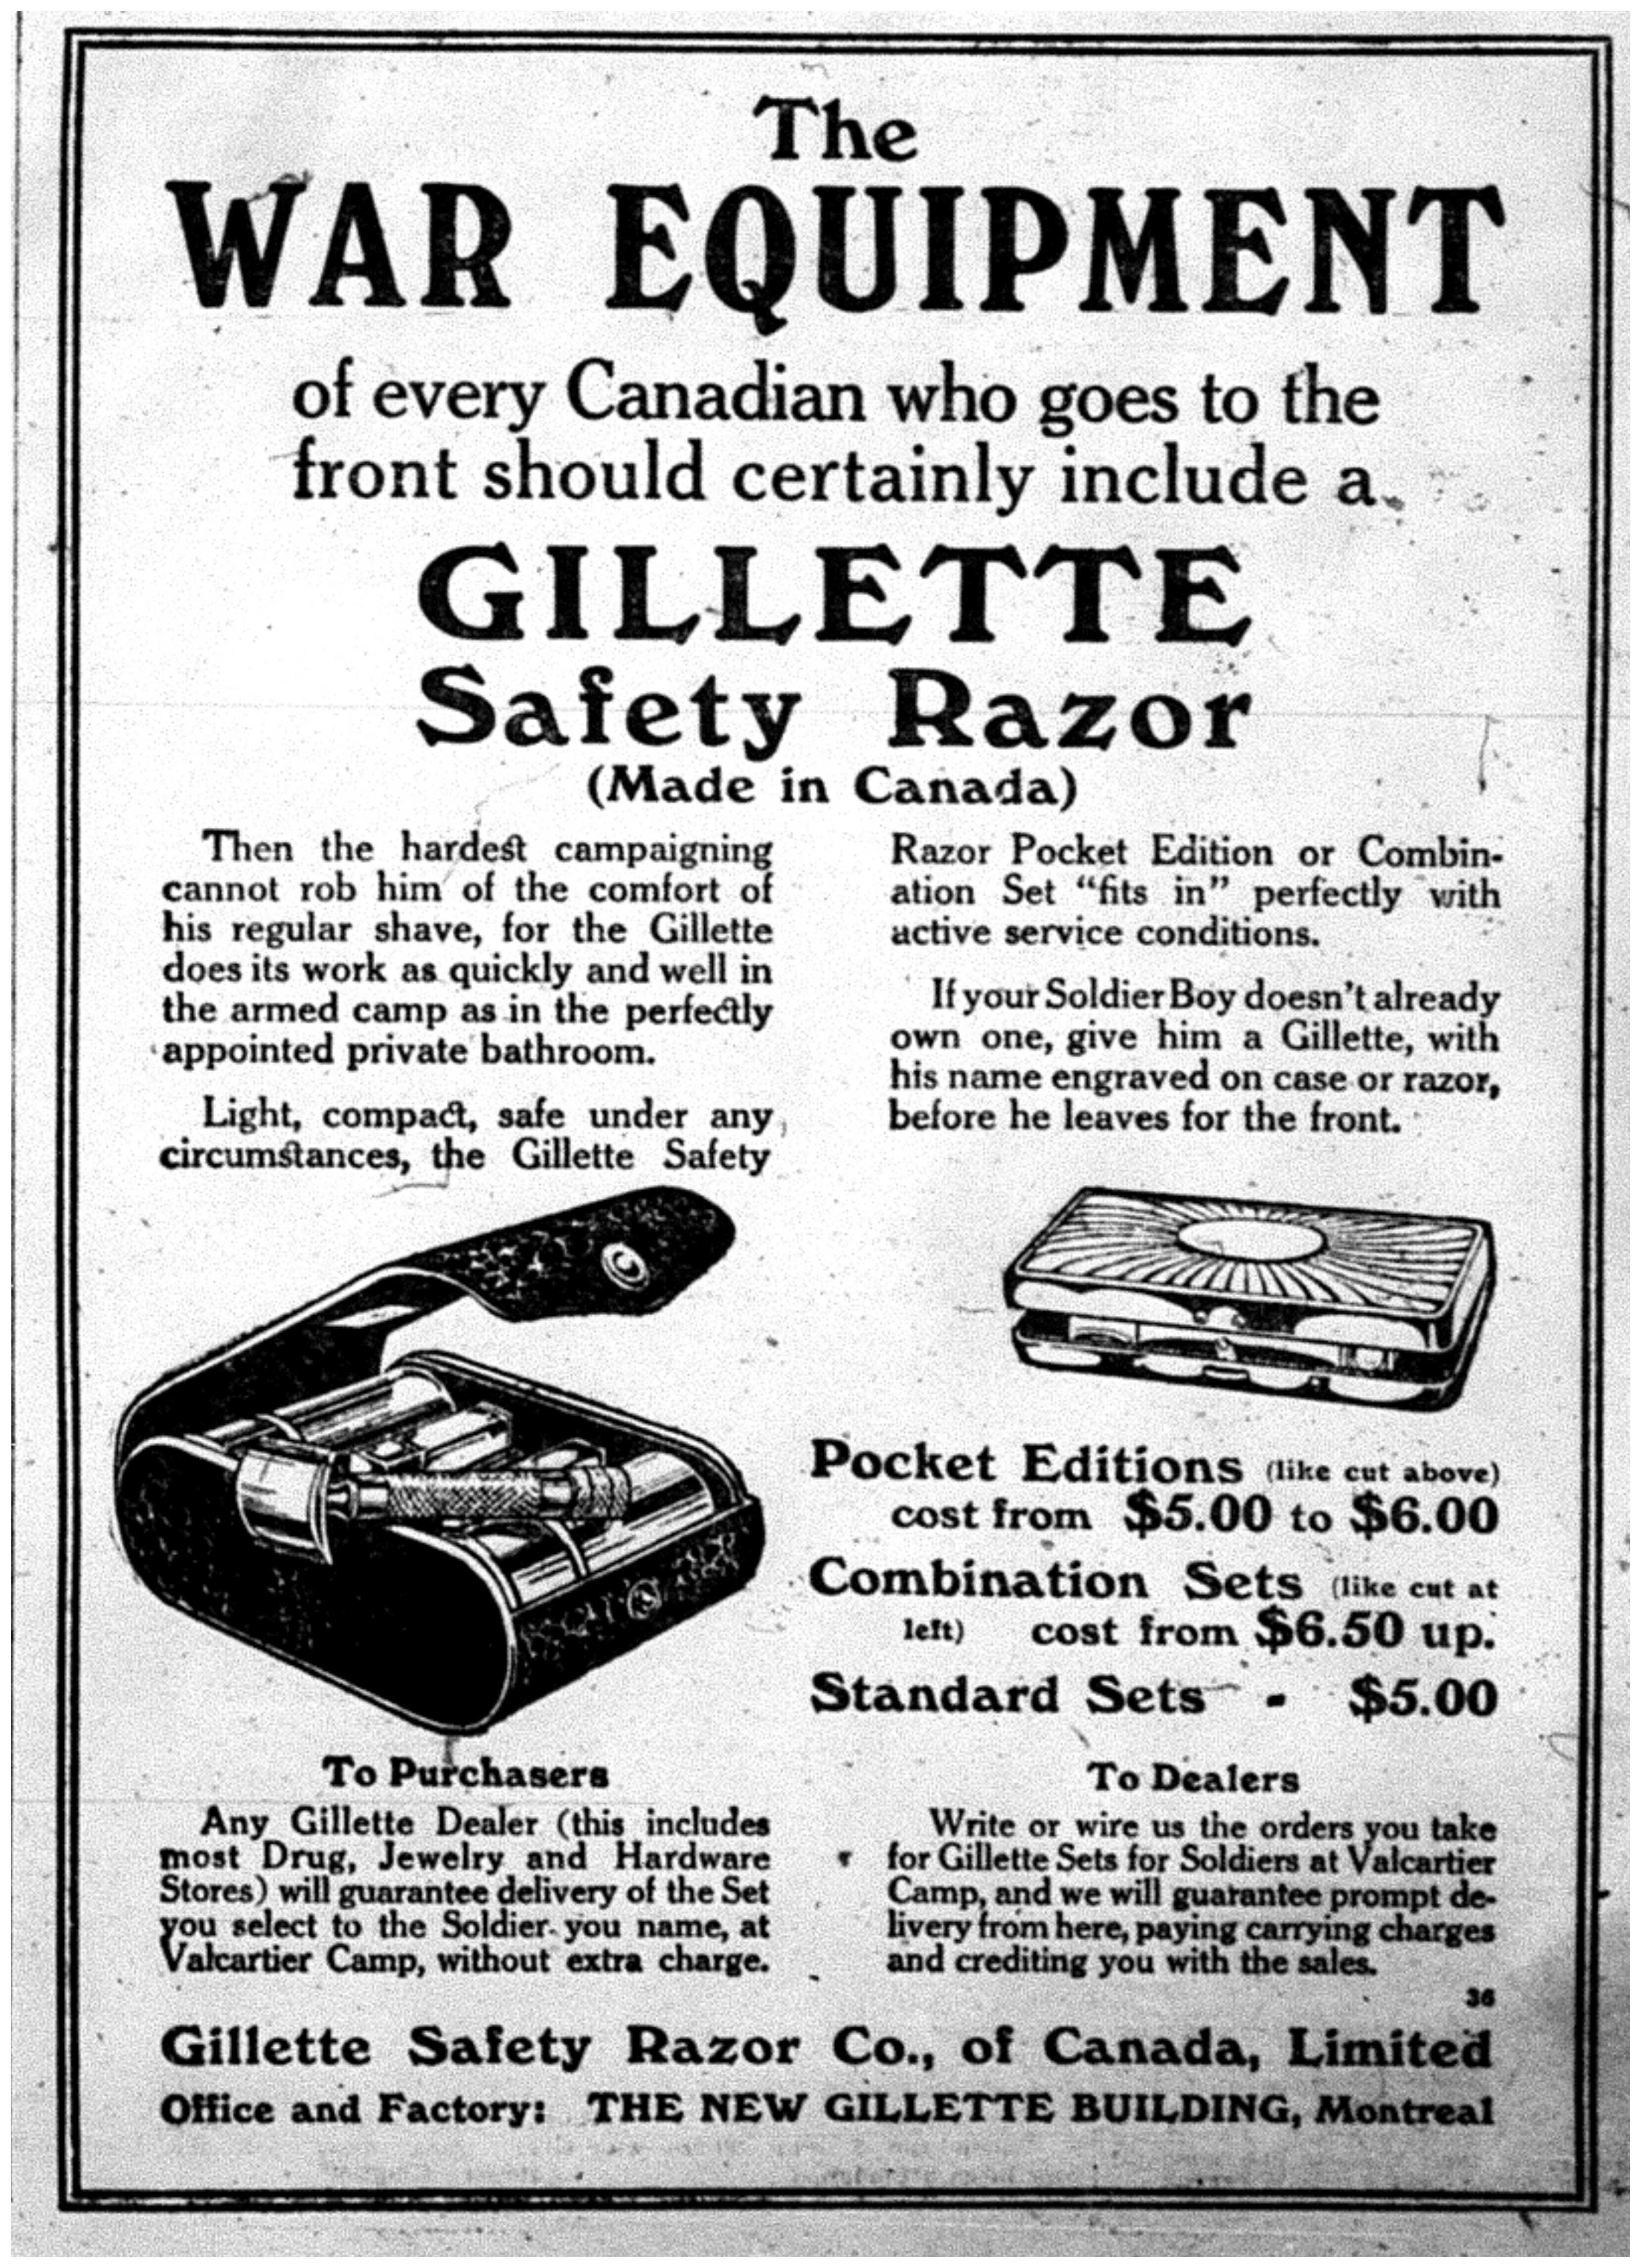 "Gillette Safety Razor"